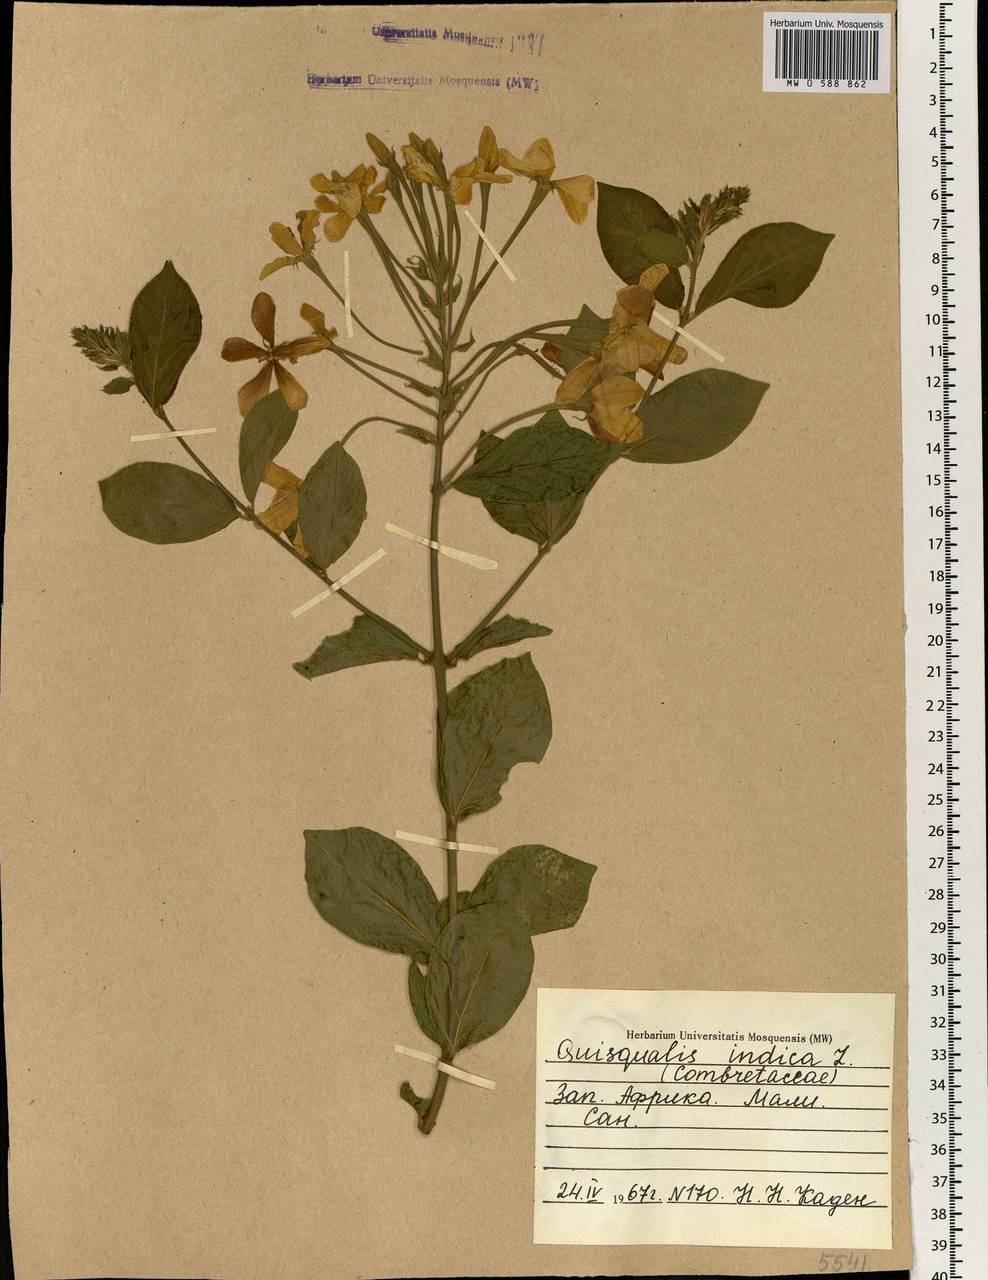 Combretum indicum (L.) C. C. H. Jongkind, Africa (AFR) (Mali)